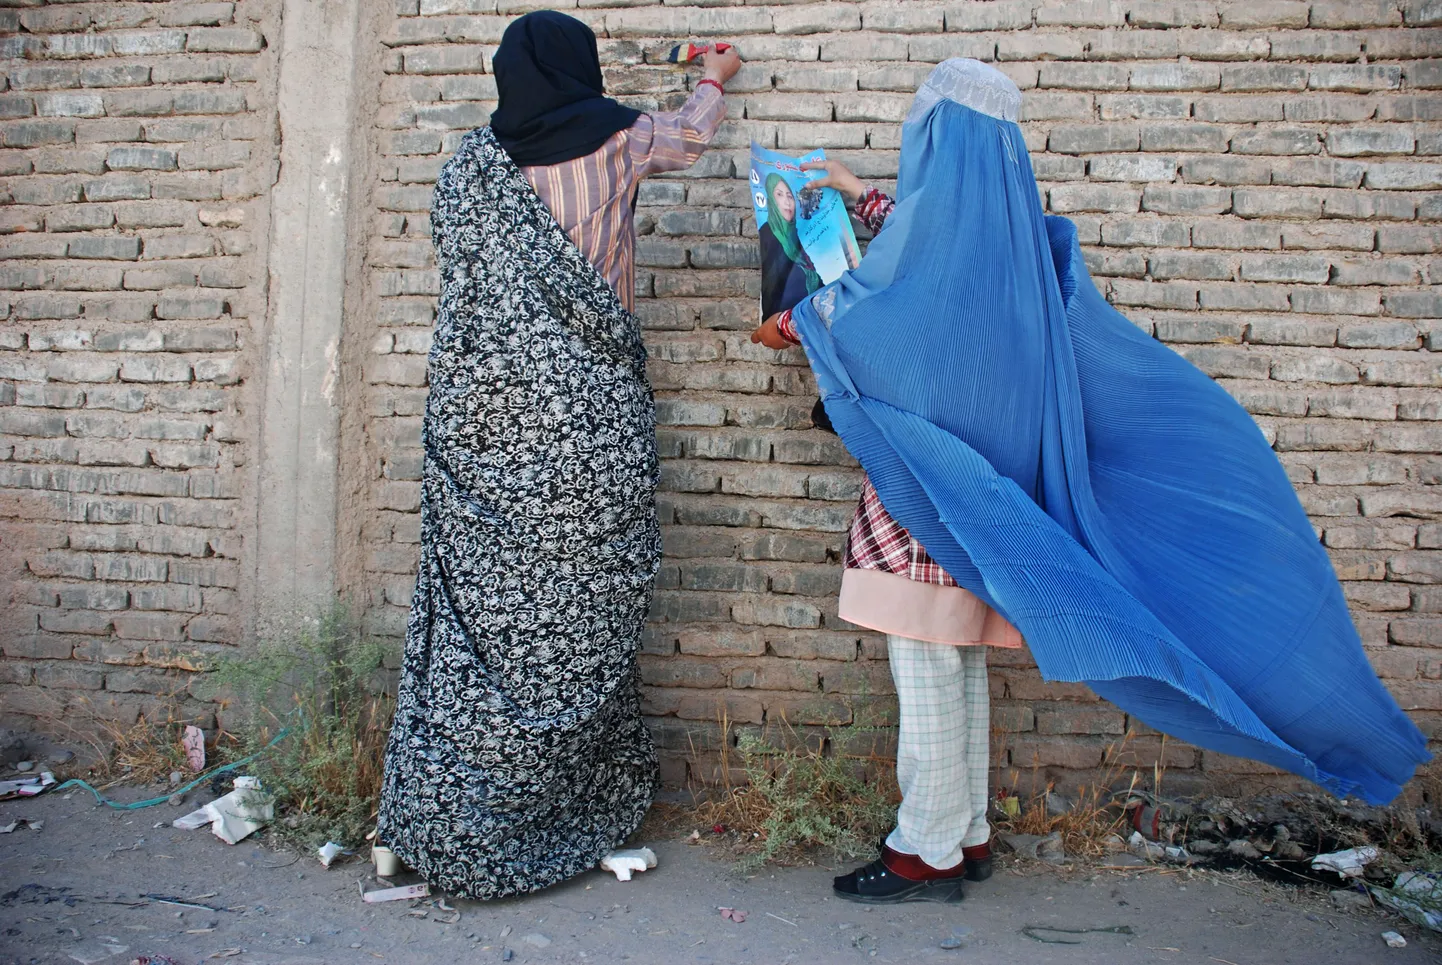 Herati naised kleepimas seinale naissoost saadikukandidaadi plakatit. Afganistani parlamendivalimised toimuvad 18. septembril.